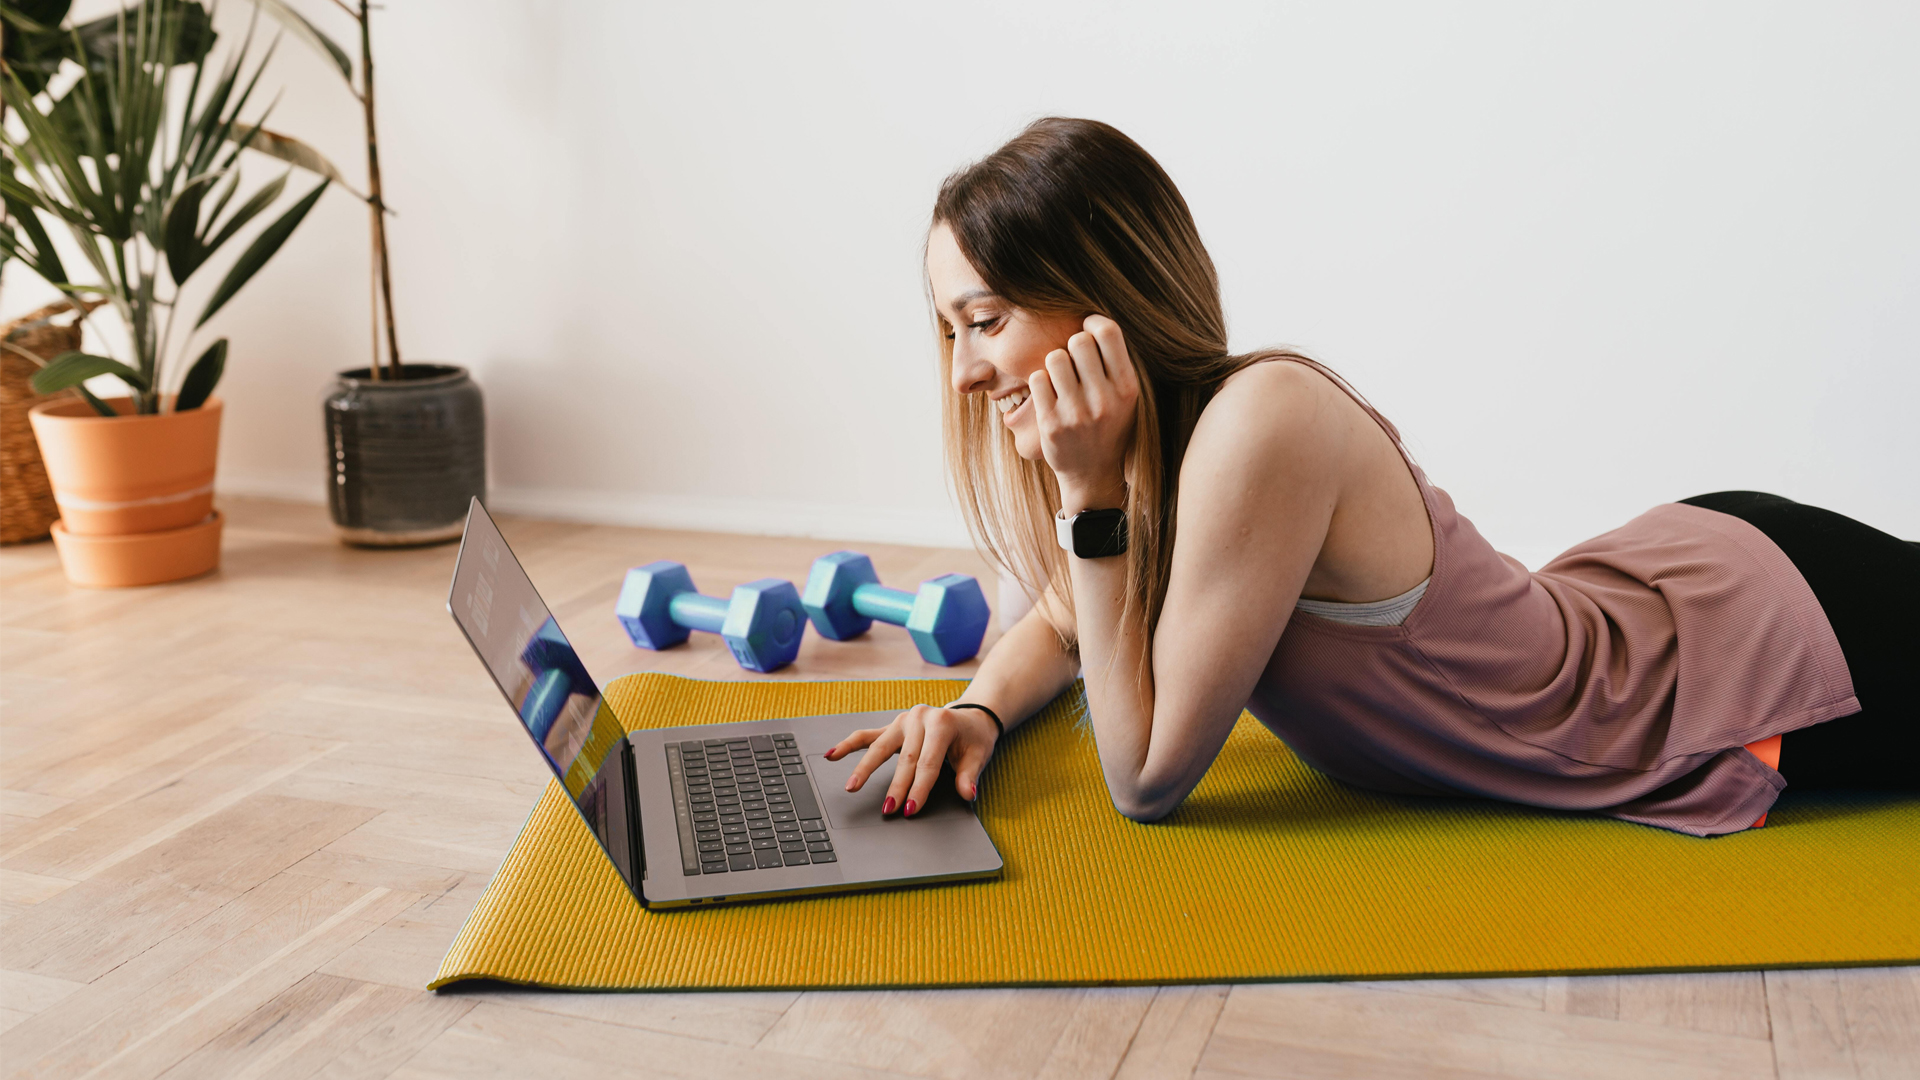 Female freelancer on yoga mat